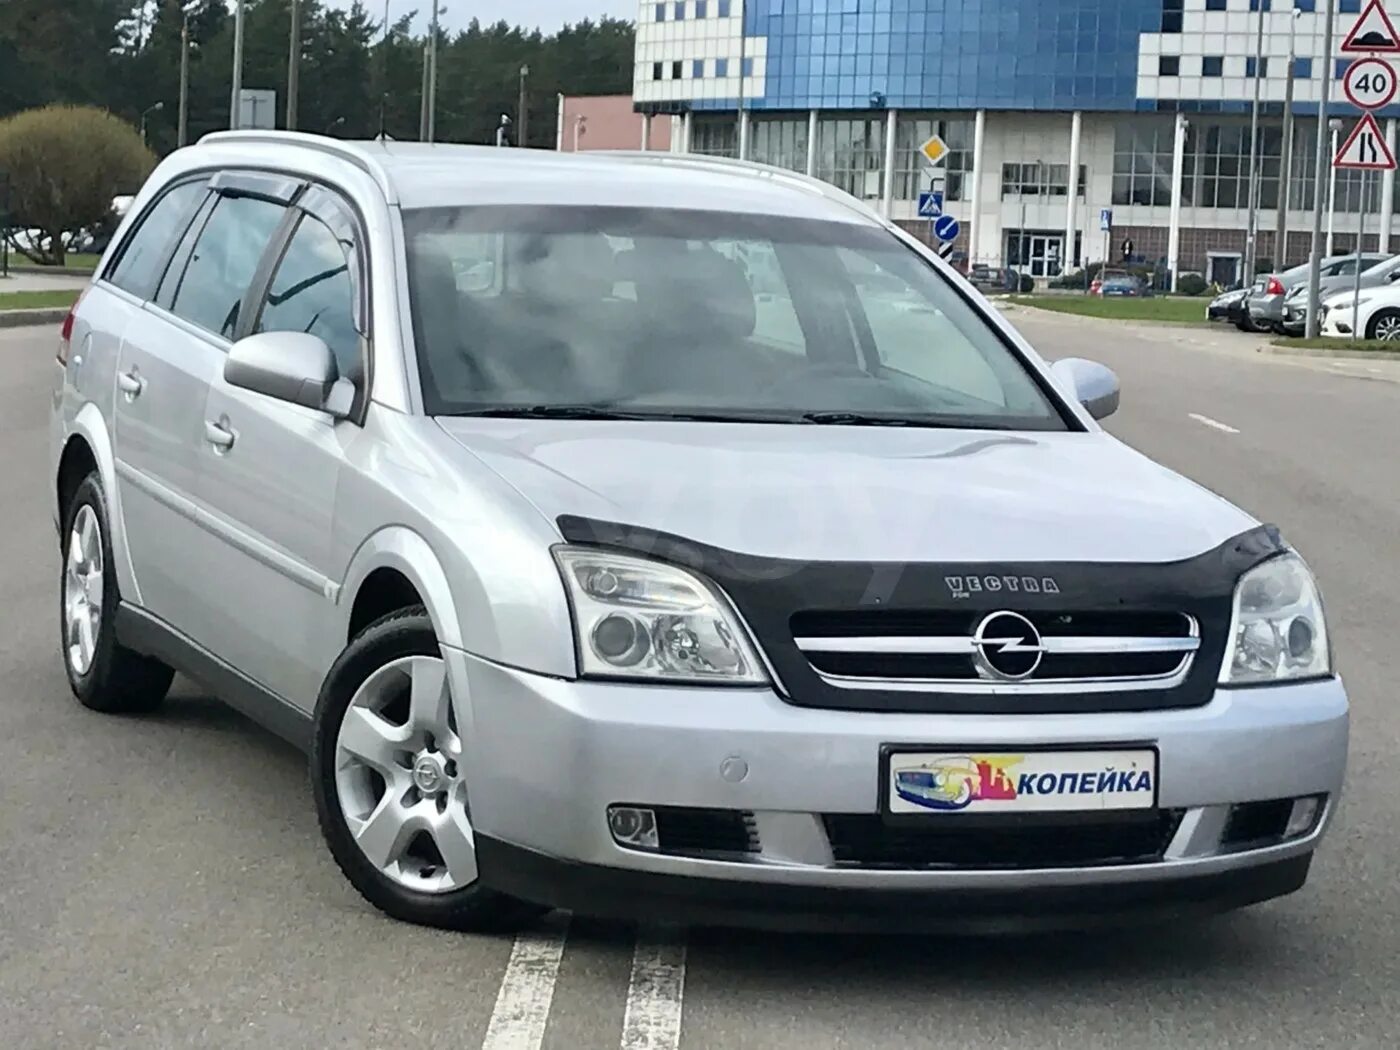 АВ бу. АВ.бу продажа. АВ.бу продажа авто в Беларуси.